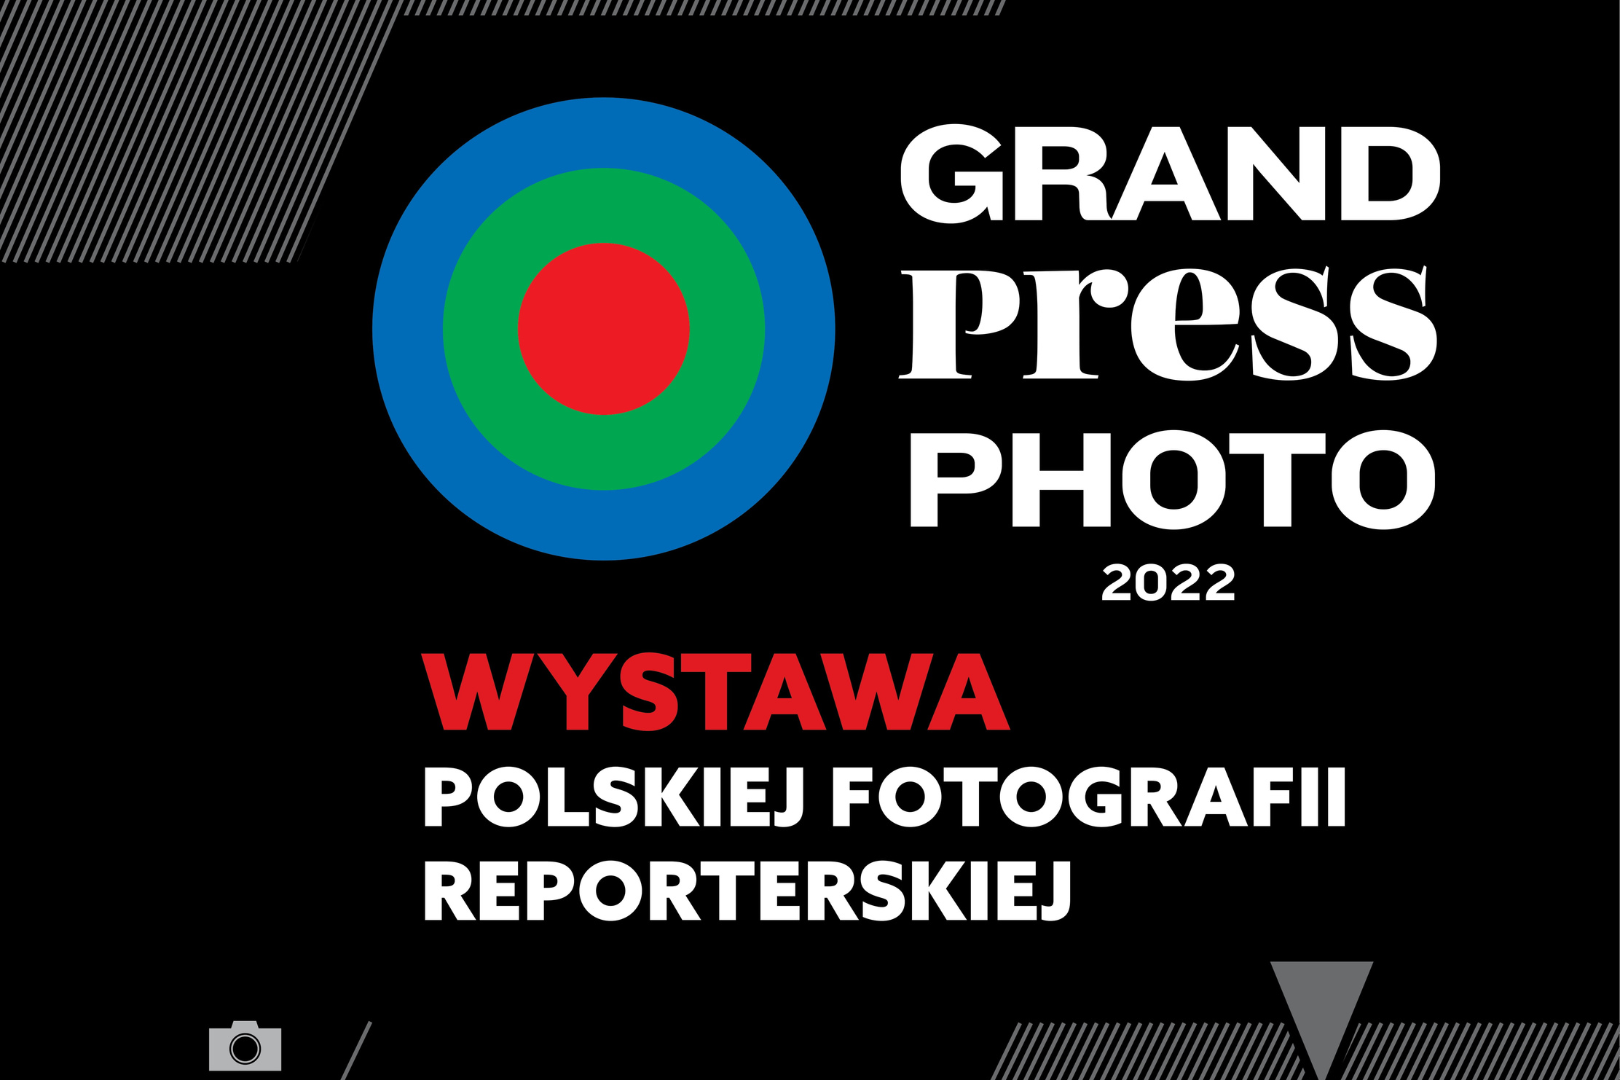 Wystawa Grand Press Photo 2022 w Darłowie